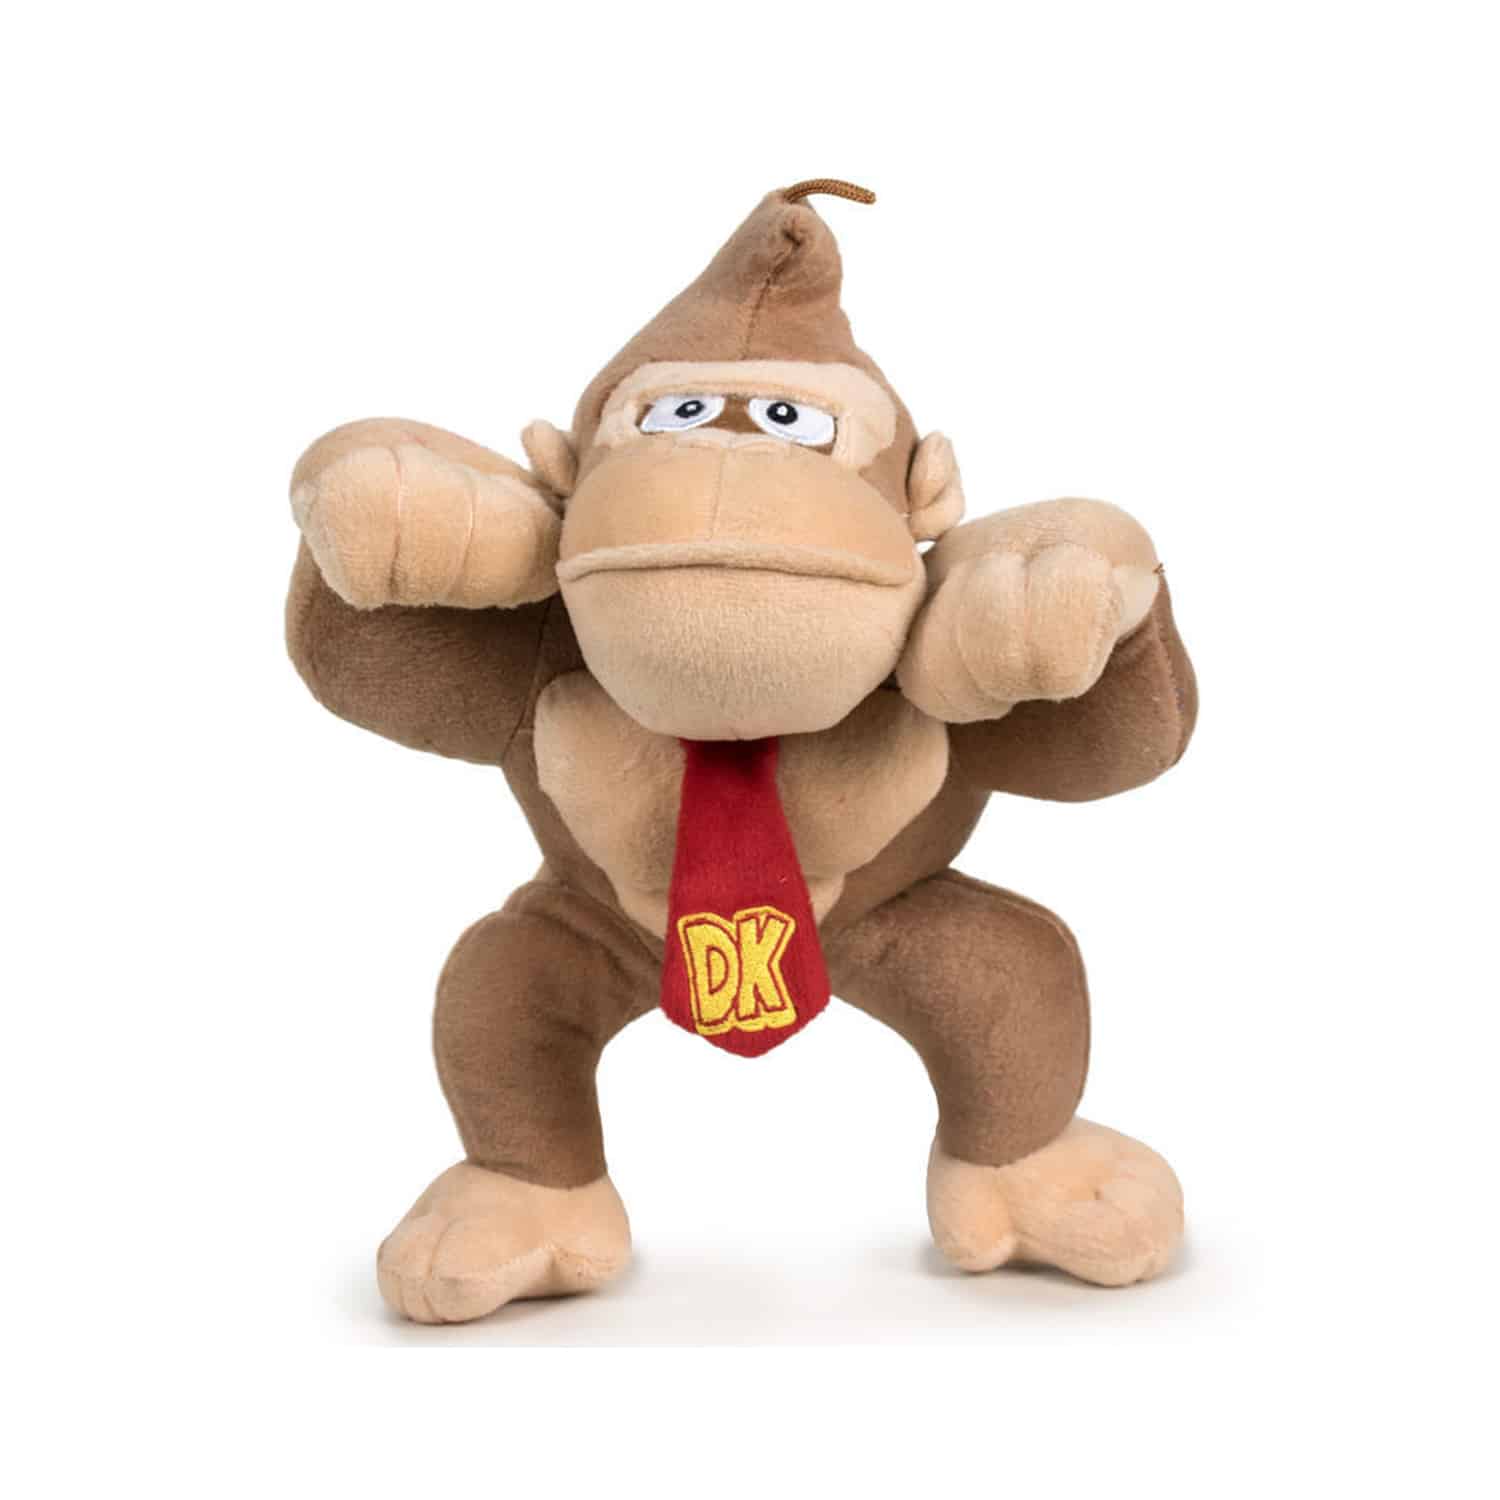 Super Mario - Donkey Kong Plush Toy